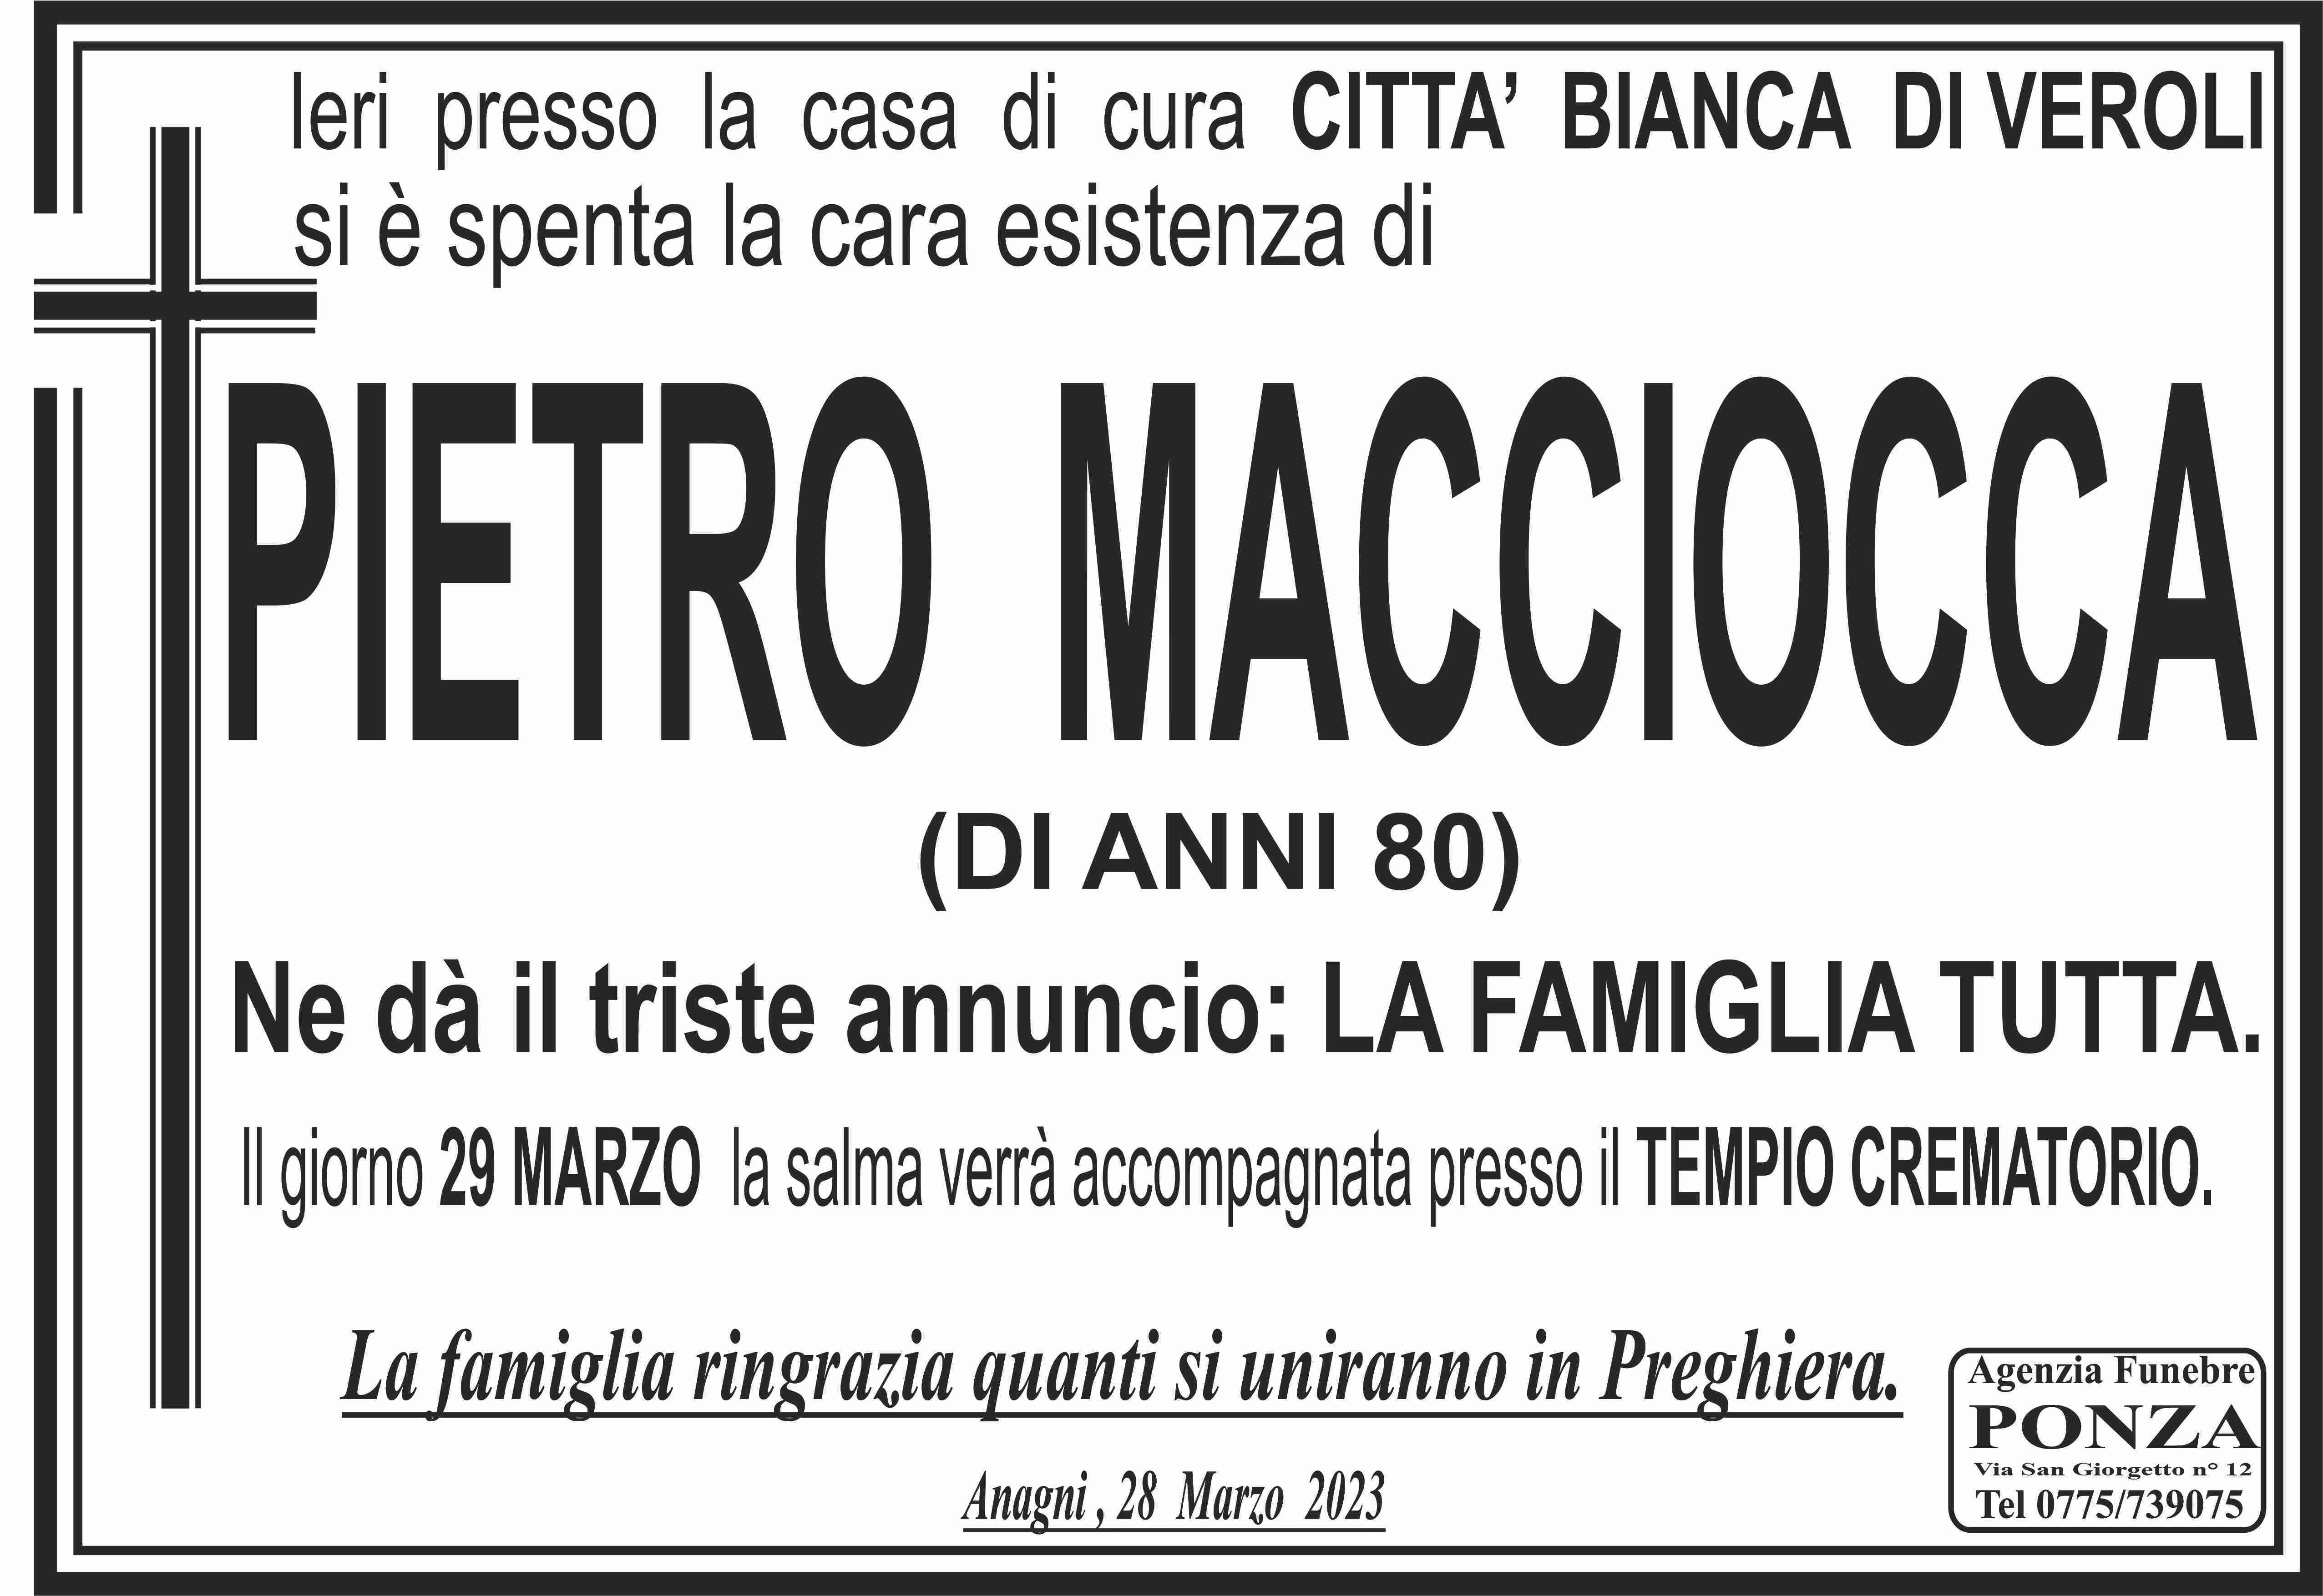 Pietro  Maccoccia